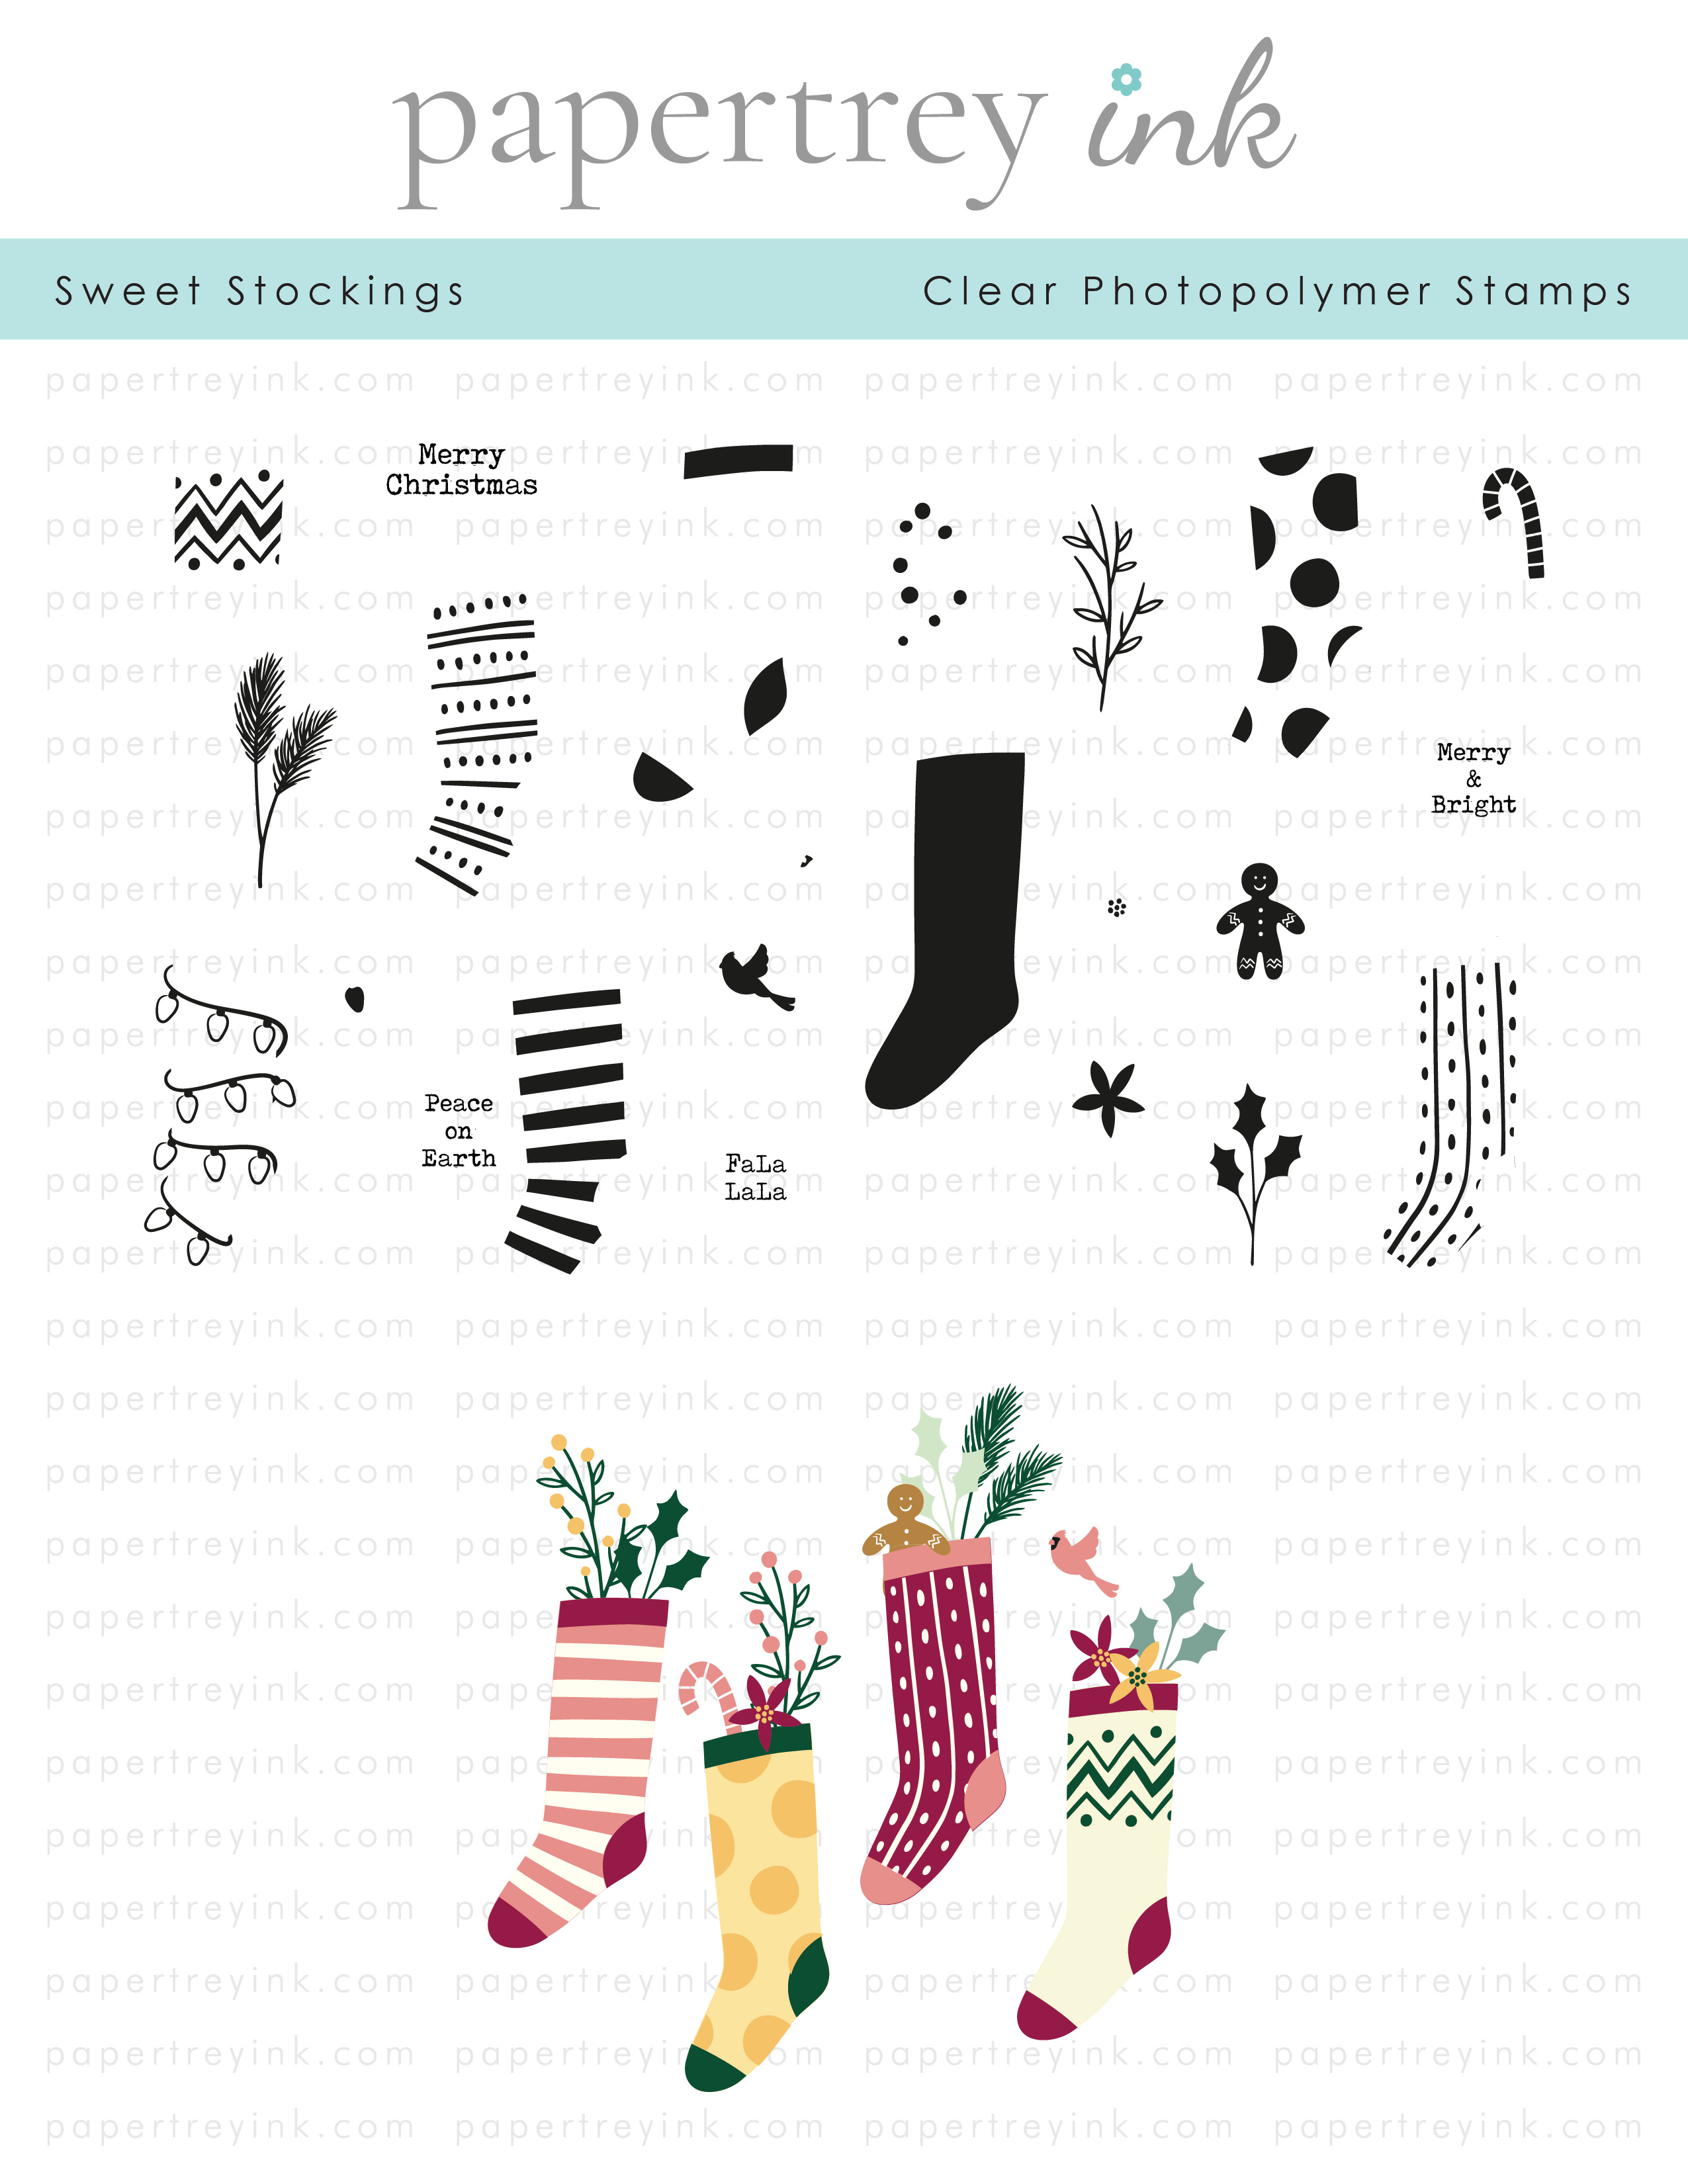 Papertrey Ink - Sweet Stockings Stamp Set